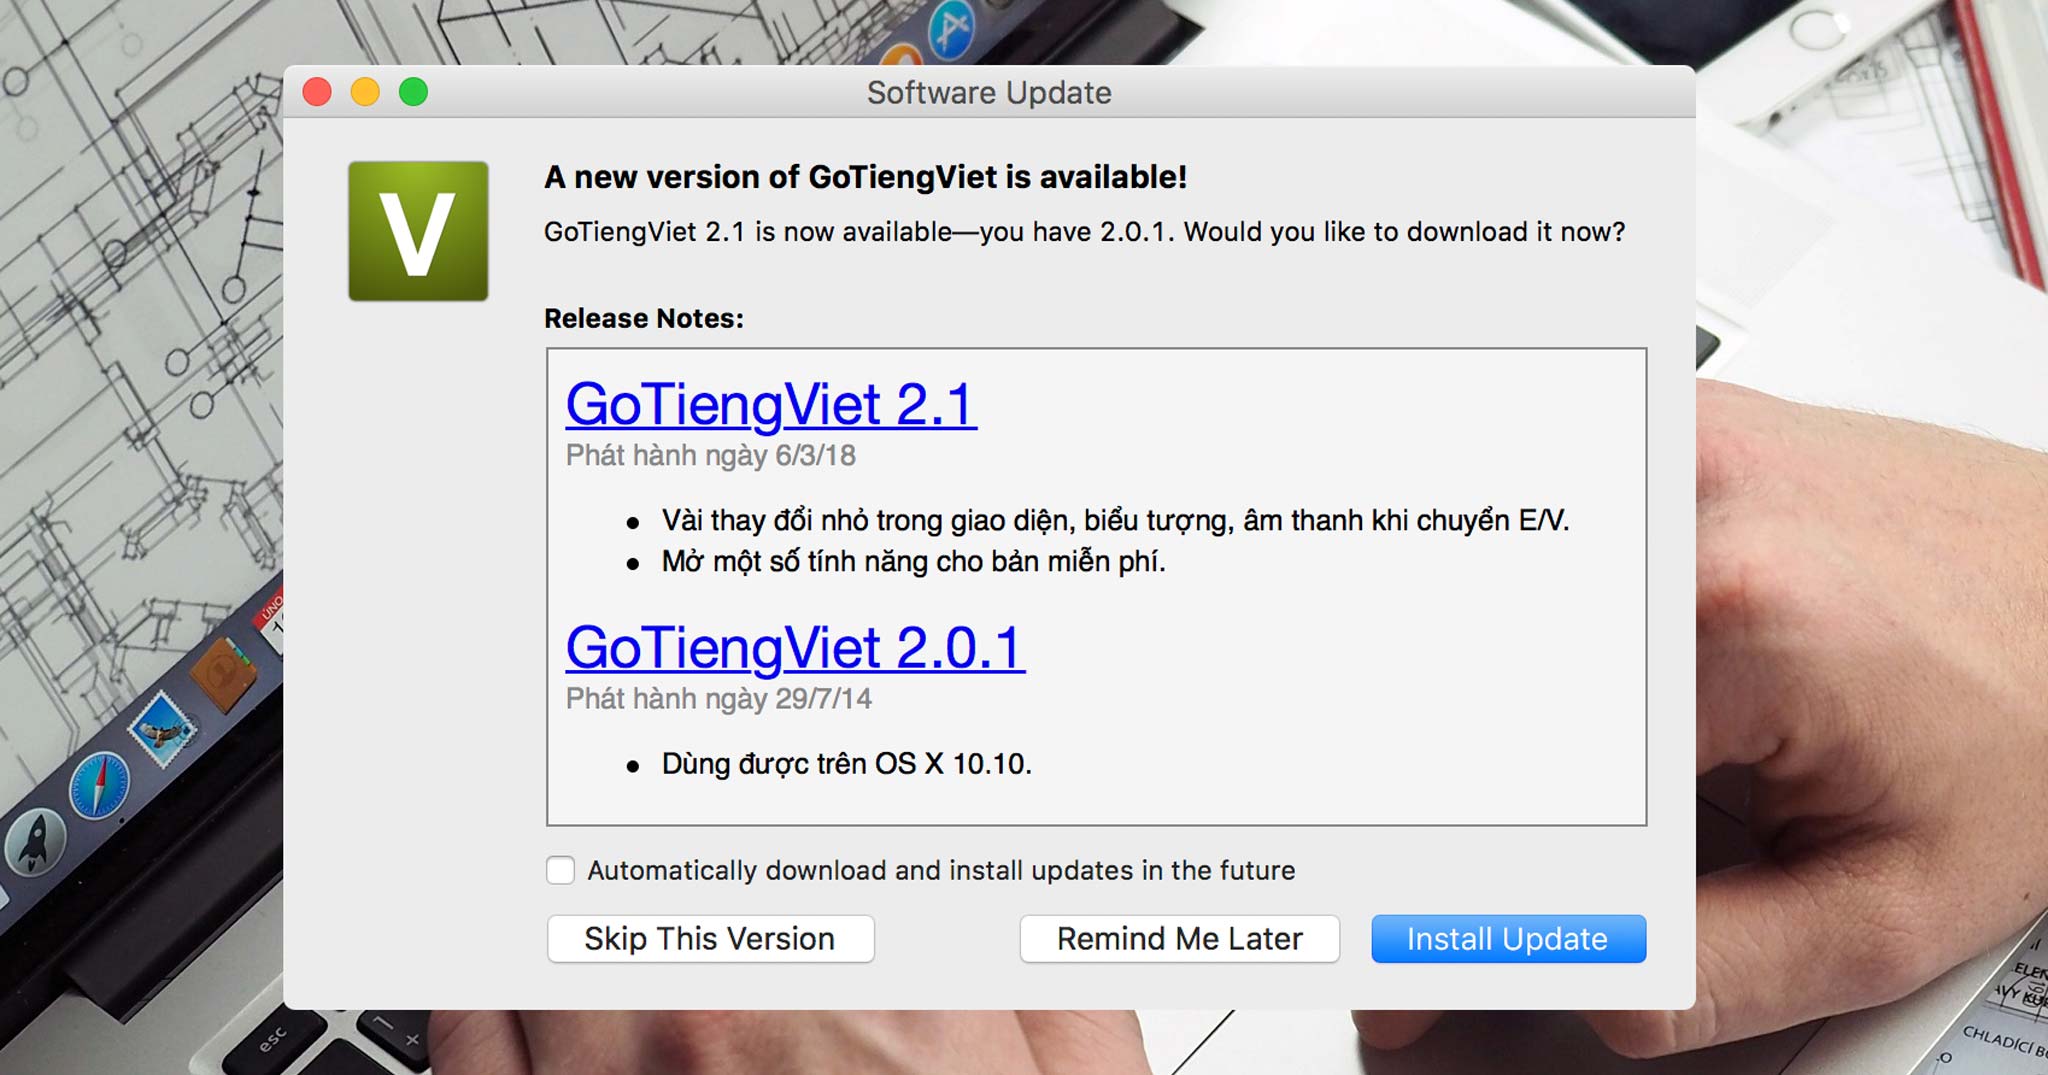 Sau 4 năm, cuối cùng thì GoTiengViet trên macOS cũng được cập nhật, nhiều thay đổi, ổn định hơn